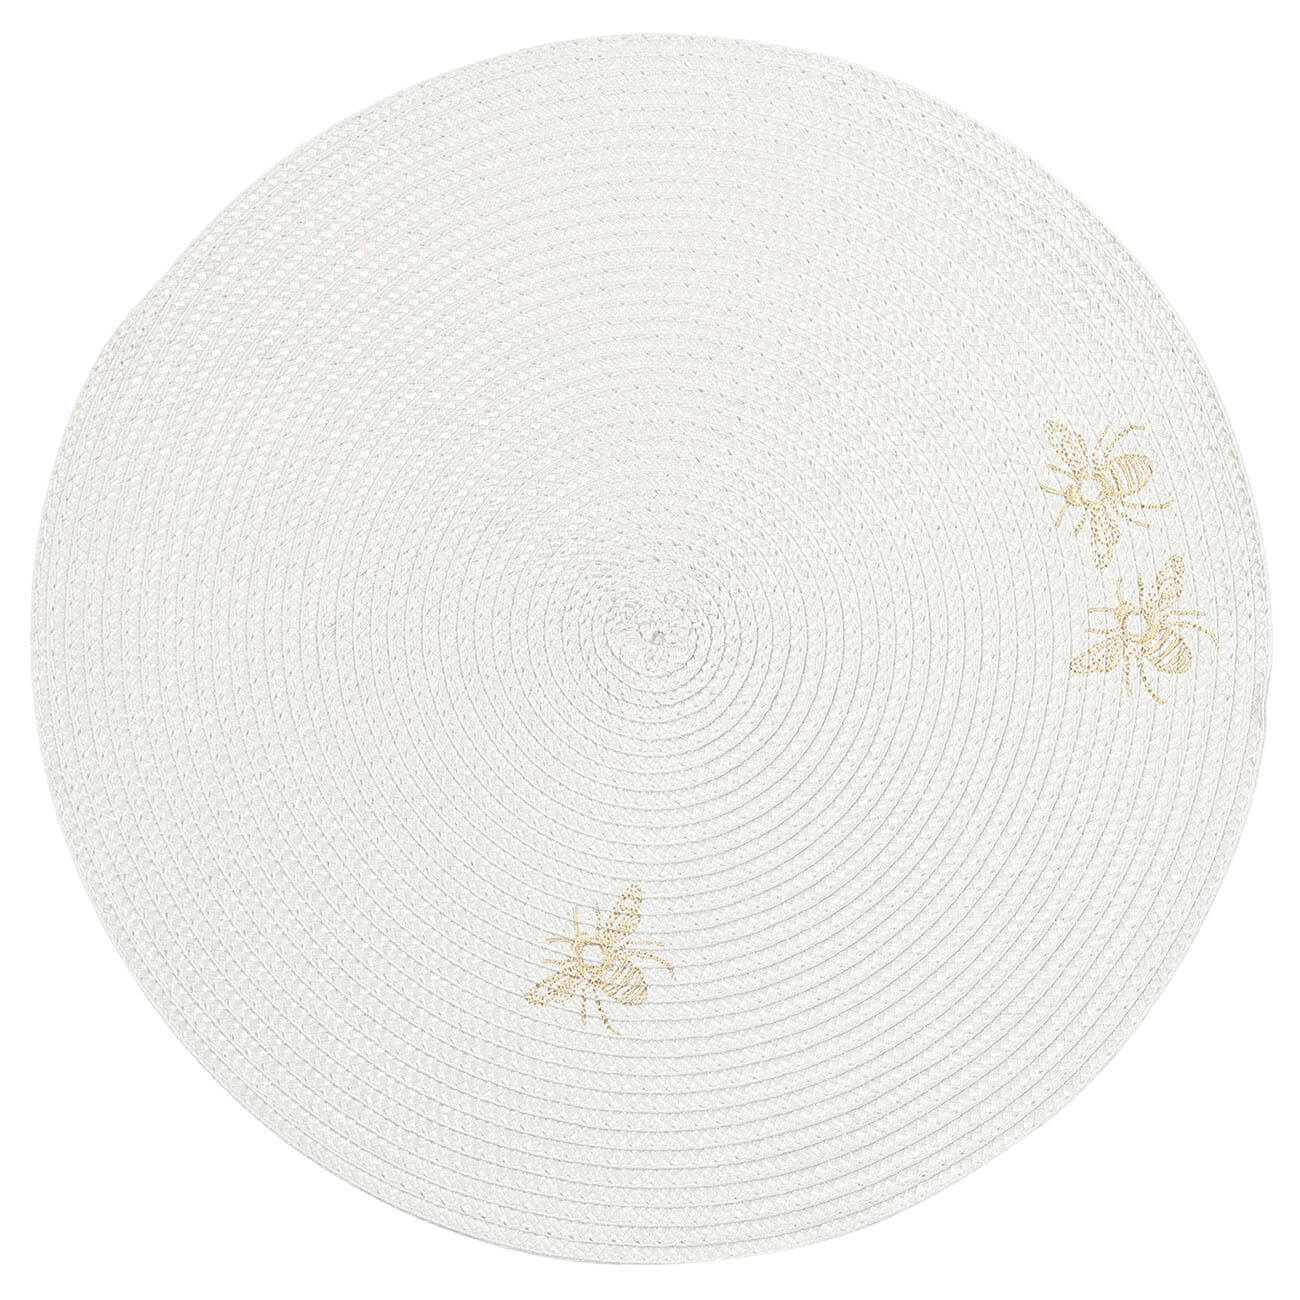 Салфетка под приборы, 38 см, полипропилен/ПЭТ, круглая, светло-серая, Пчелы, Circle embroidery изображение № 1